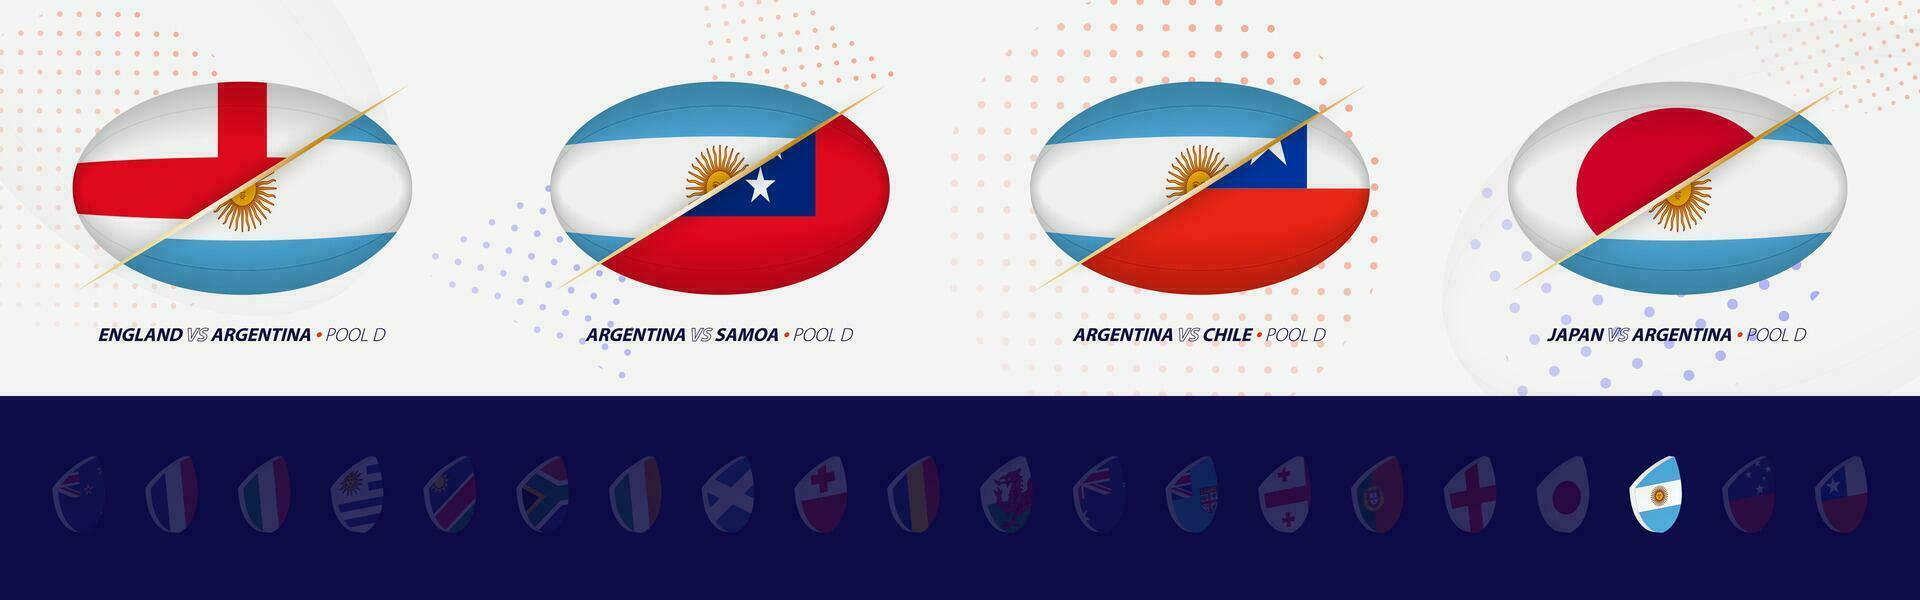 rugby competencia íconos de argentina rugby nacional equipo, todas cuatro partidos icono en piscina. vector